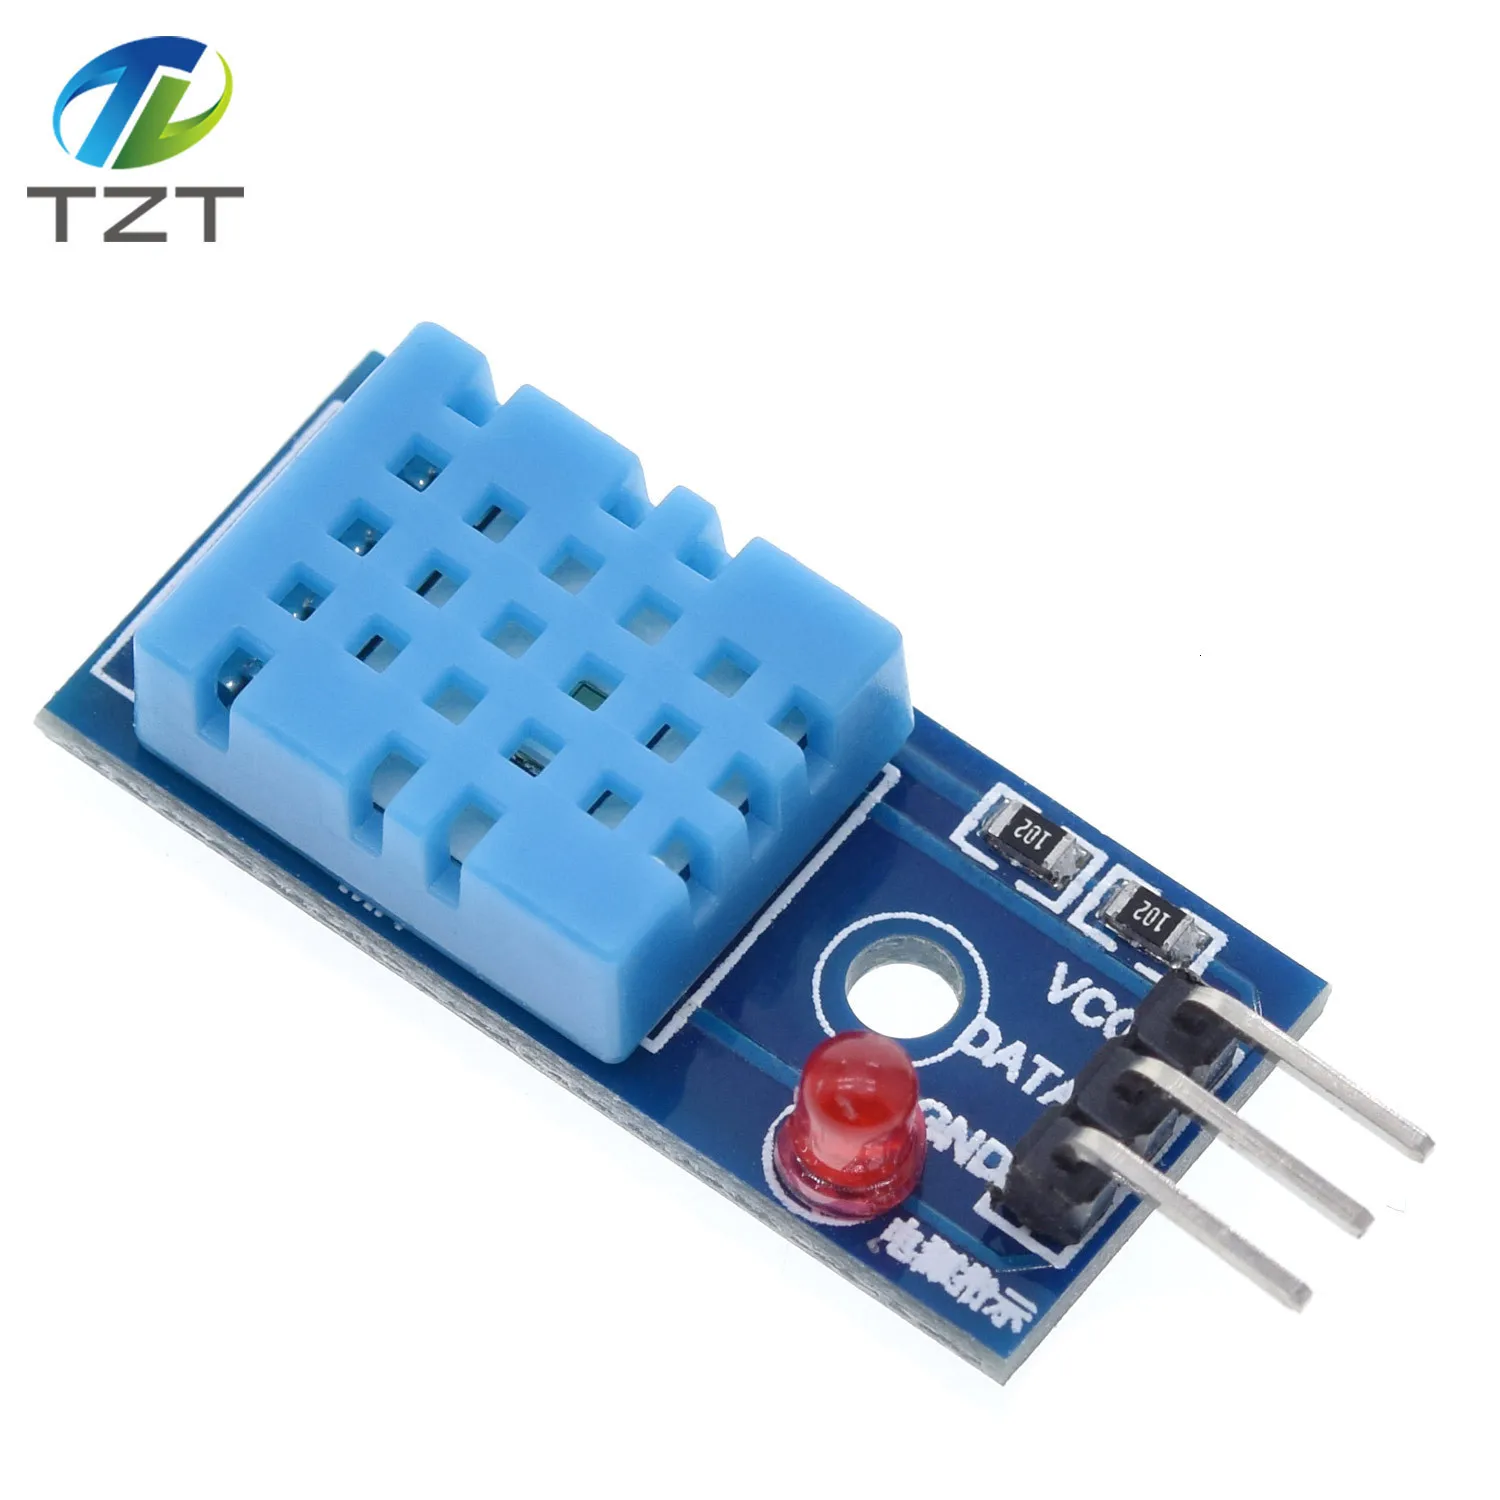 DHT22 AM2302 DHT11/DHT12 AM2320 цифровой датчик температуры и влажности плата модуля для Arduino ультра-низкая мощность Высокая точность 4pin